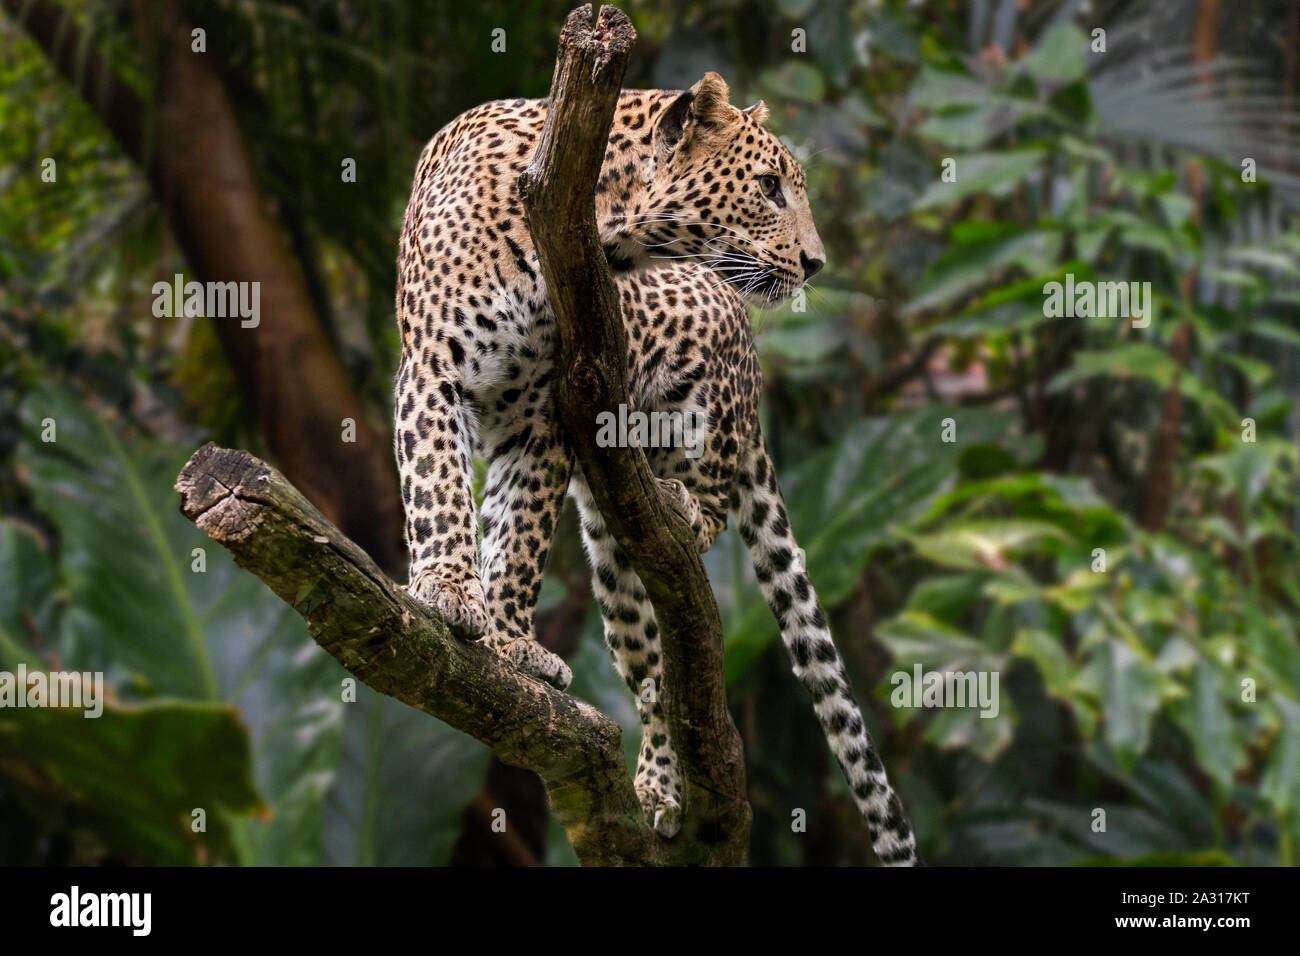 El leopardo de Sri Lanka (Panthera pardus kotiya), árbol nativo de Sri Lanka Foto de stock